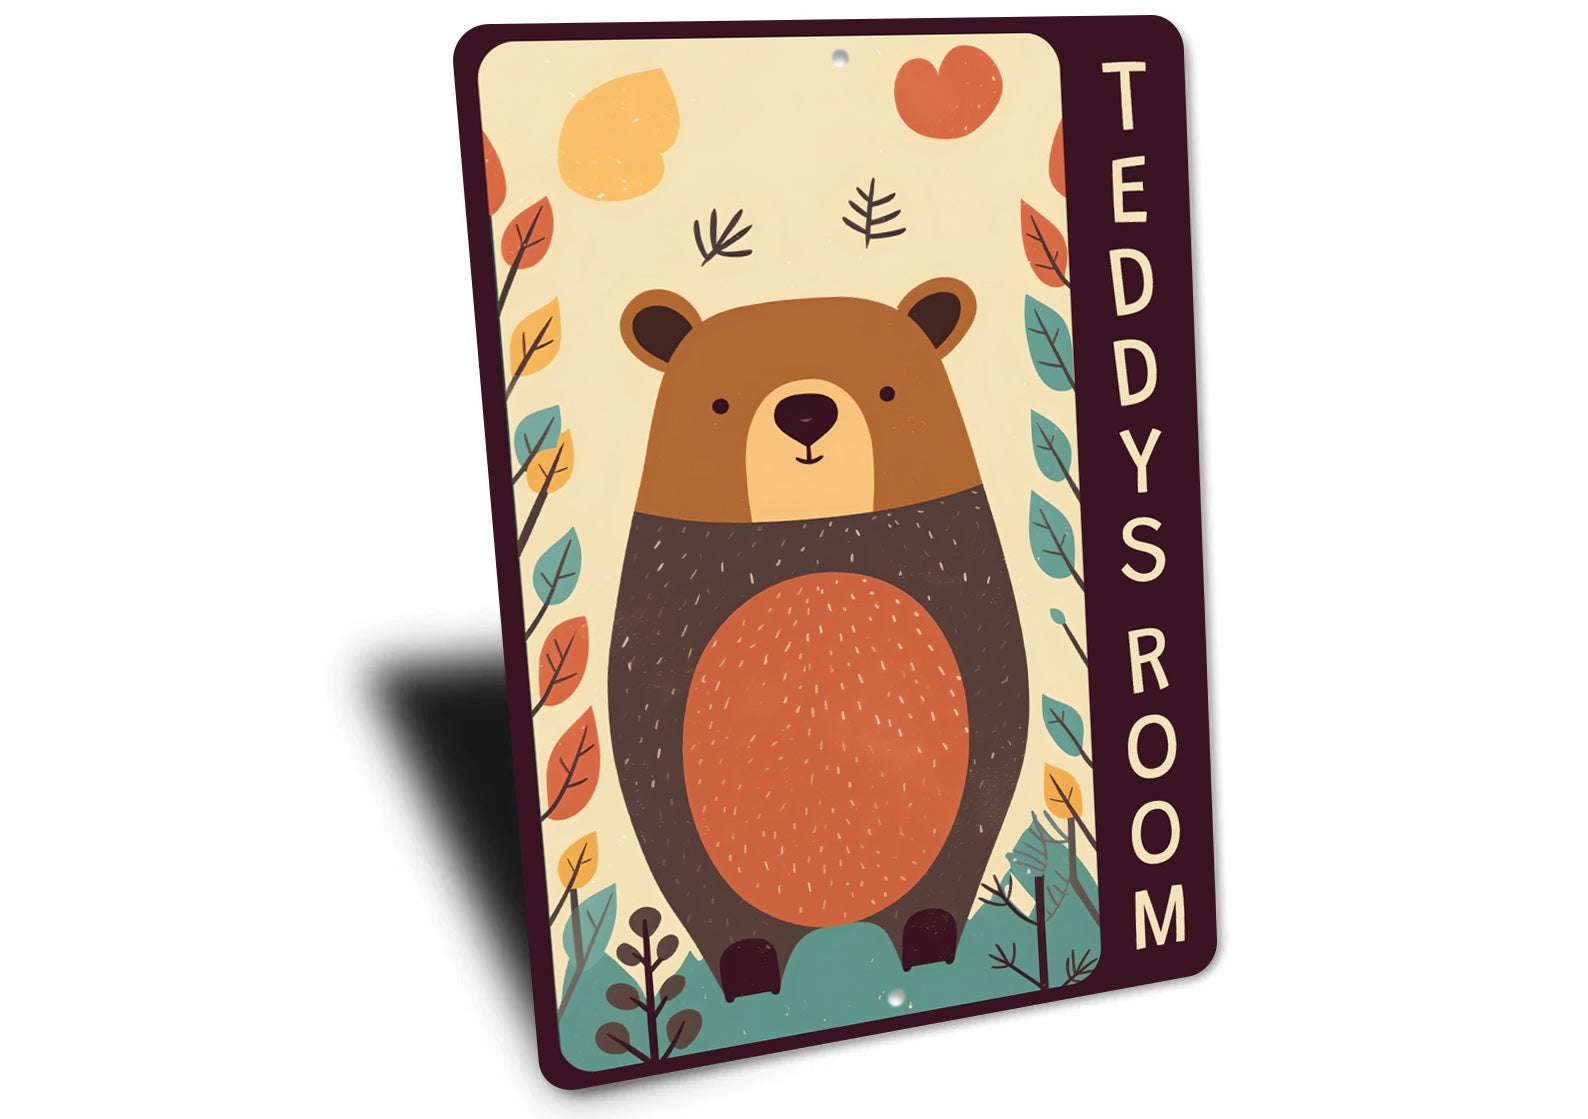 Teddy Bear Theme Kids Room Sign